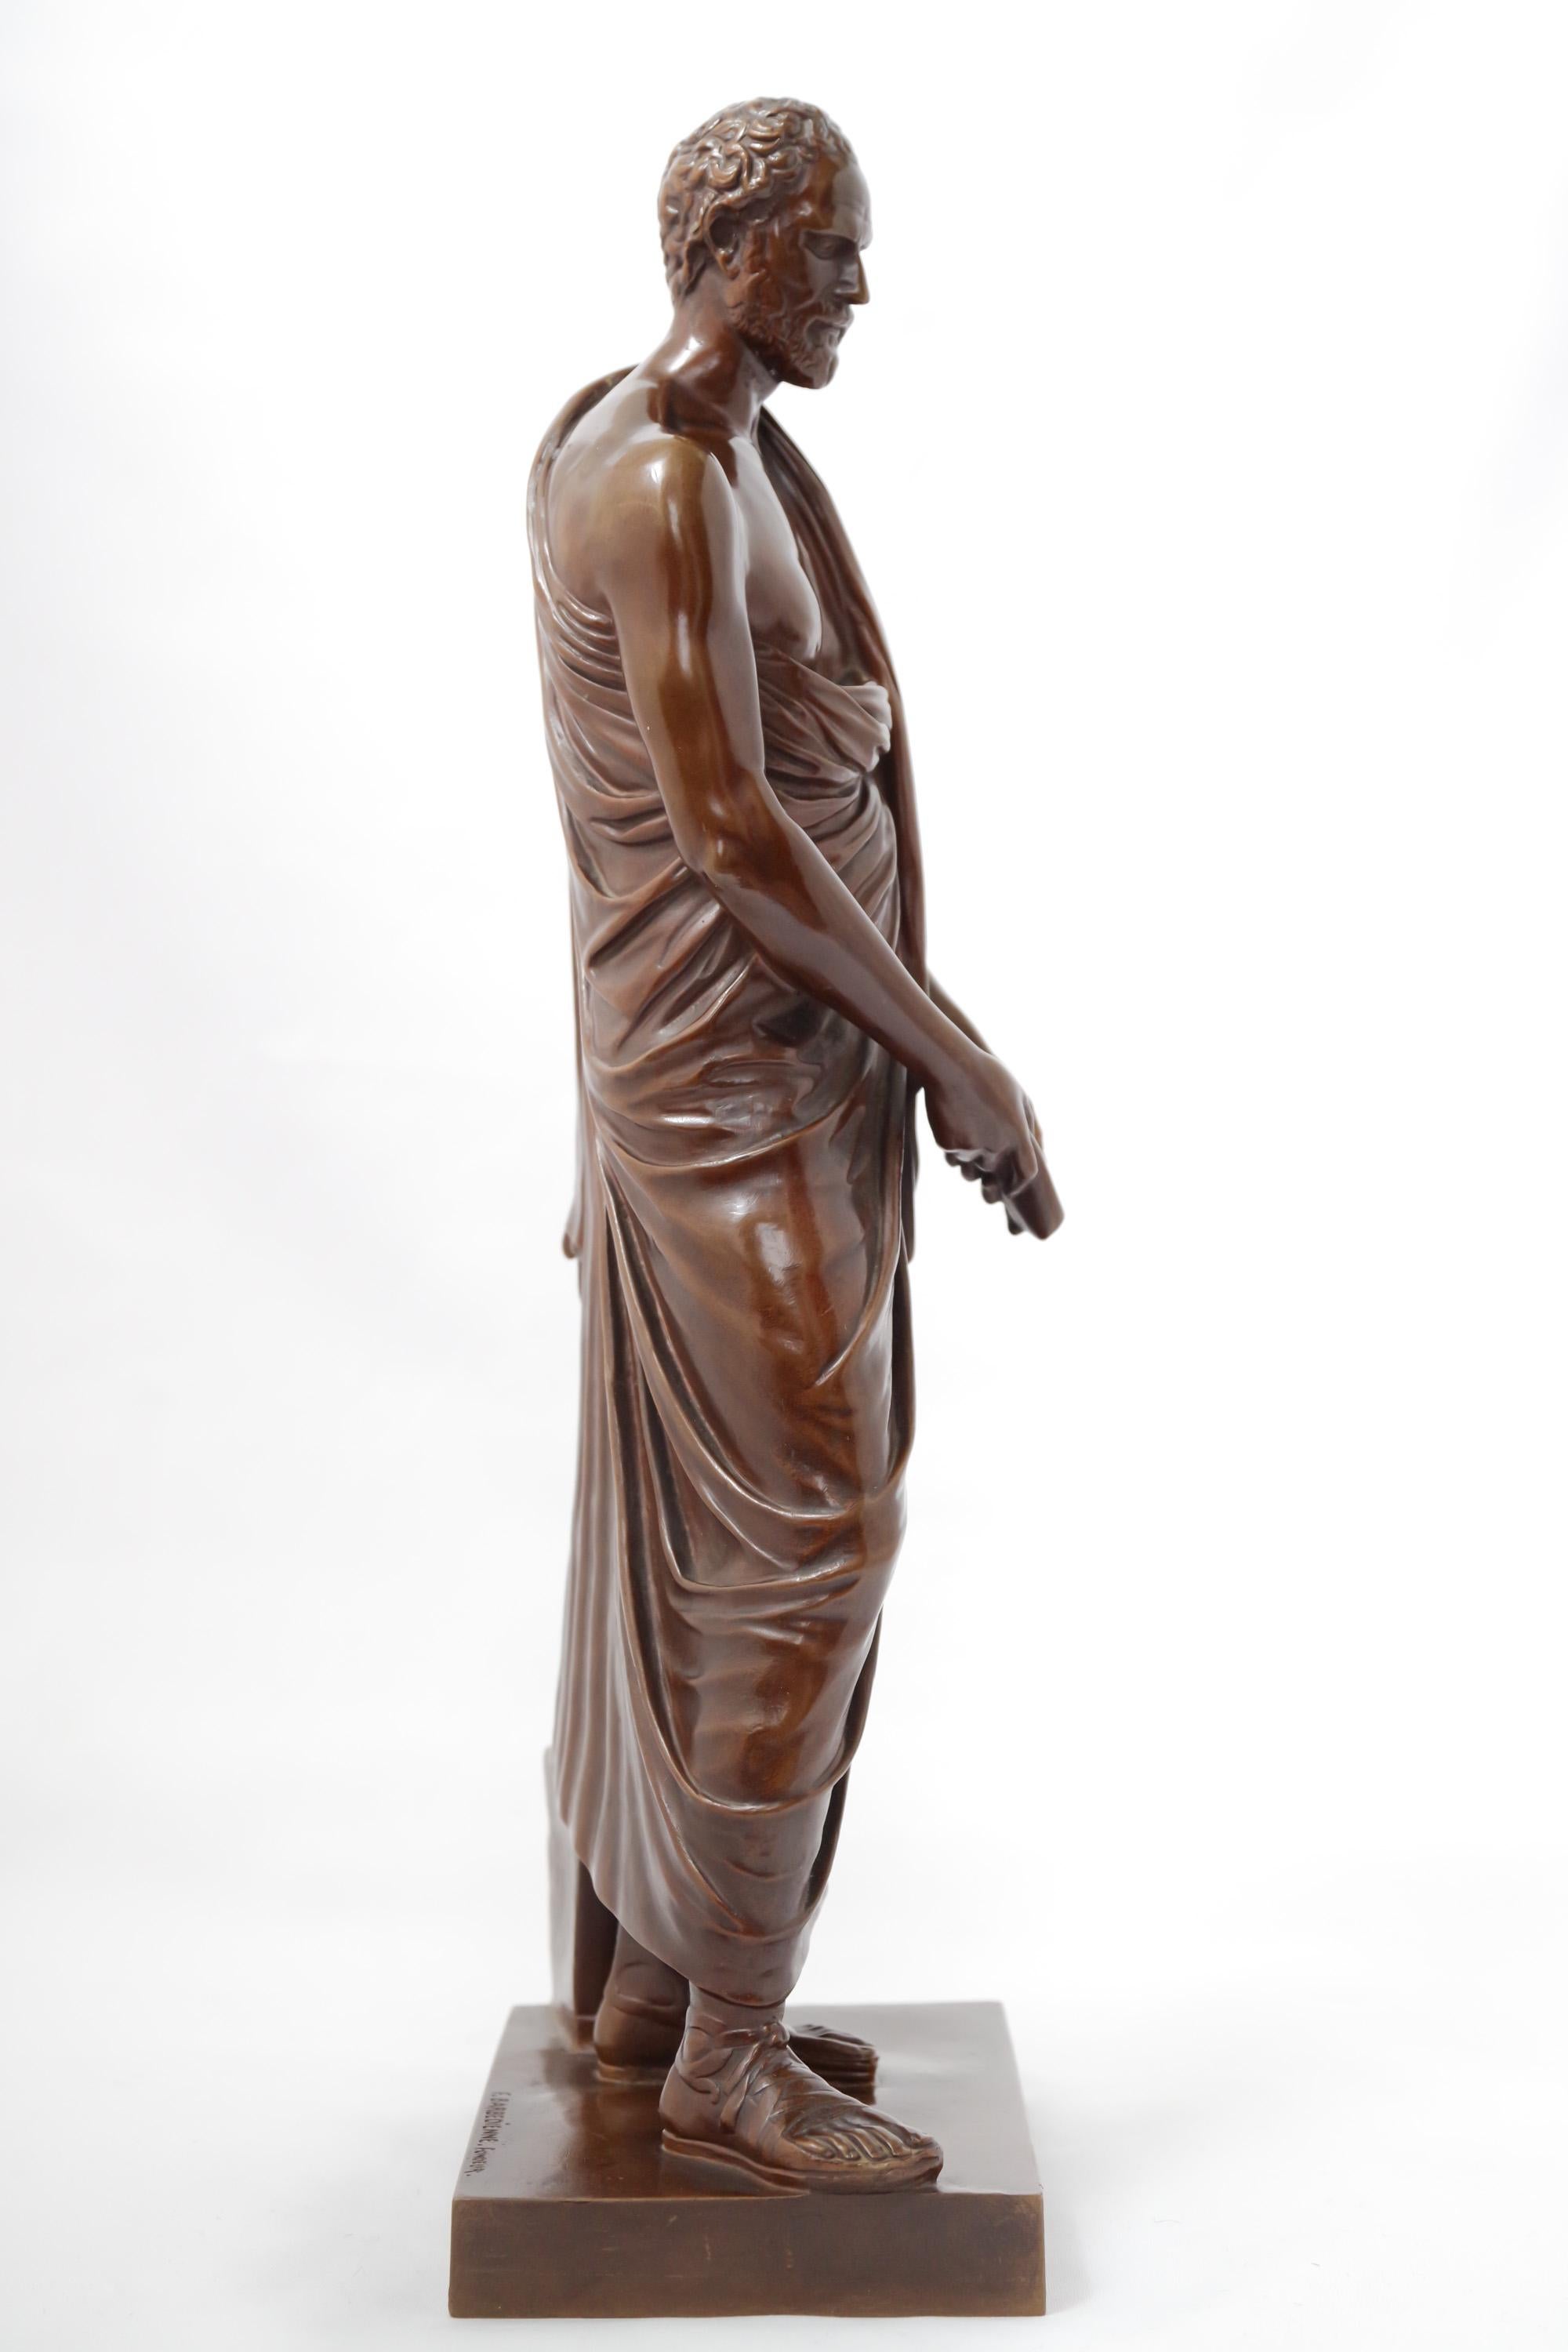 Figure en bronze représentant Démosthène (384-322 av. J.-C.), homme d'État et orateur grec. La sculpture est basée sur une copie romaine d'une statue grecque originale. La patine brun chocolat du personnage évoque immédiatement le travail de la